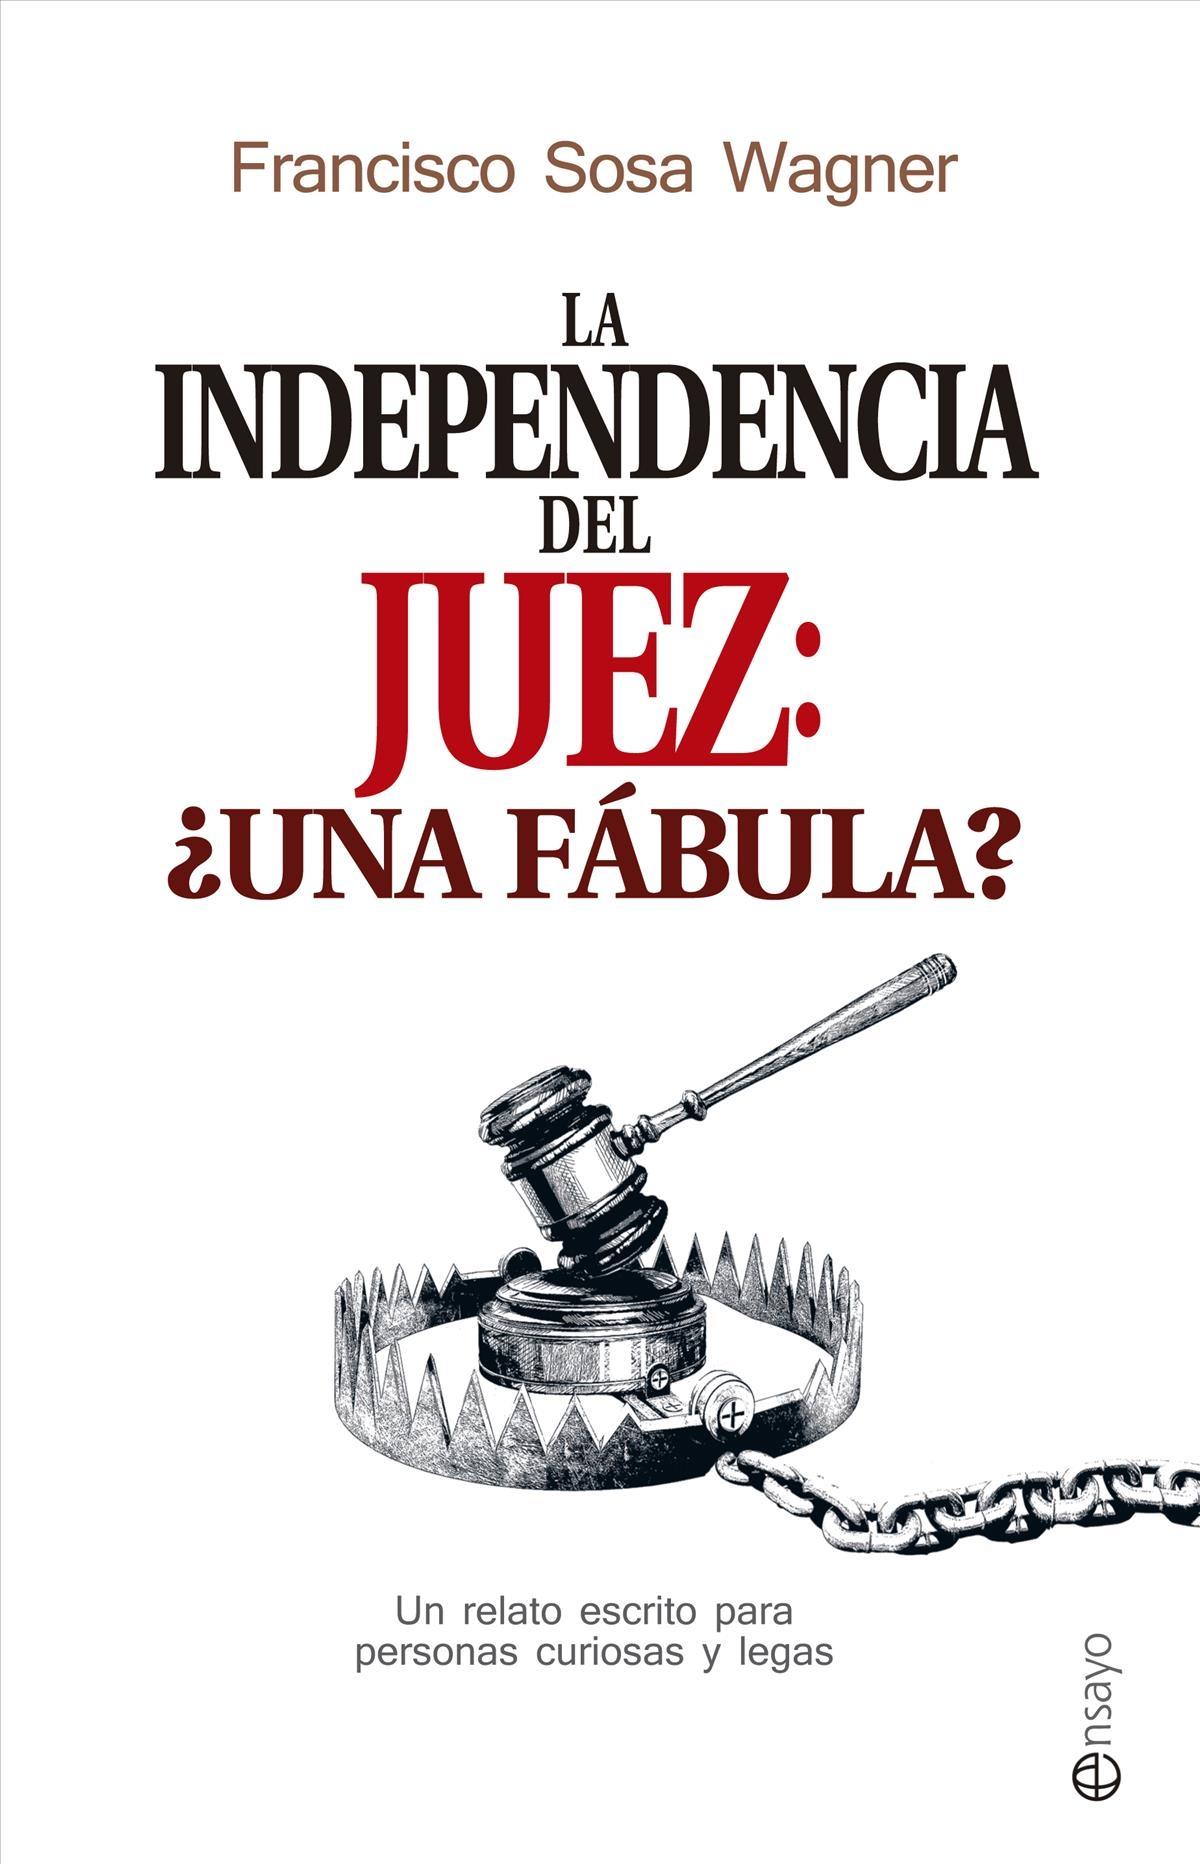 La independencia del juez: ¿una fábula? "Un relato escrito para personas curiosas y legas"